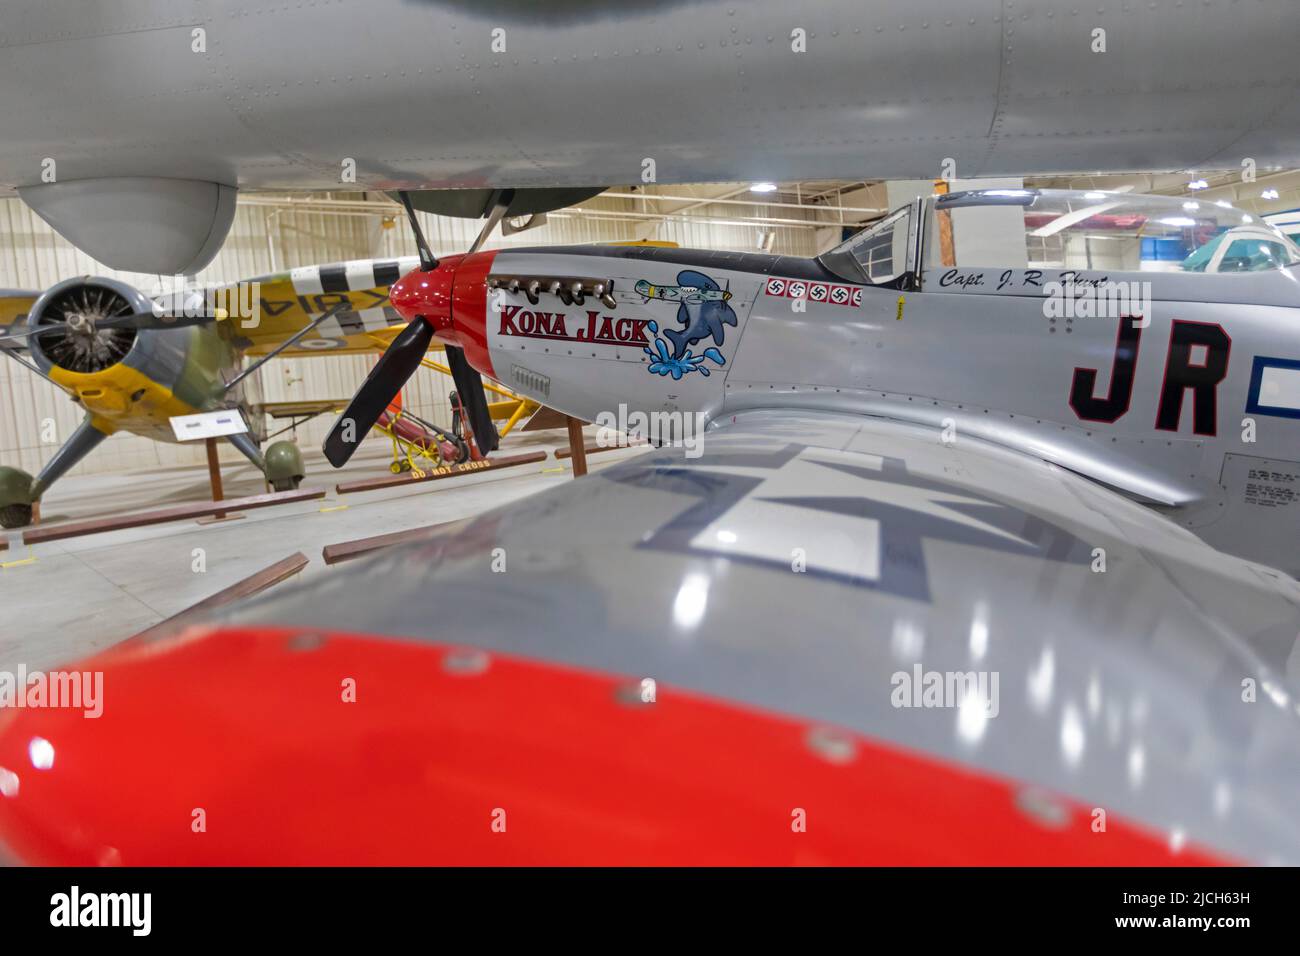 Liberal, Kansas - le Mid-America Air Museum. Le musée expose plus de 100 avions. Le Kona Jack est une réplique des trois quarts de l'air de la Seconde Guerre mondiale Banque D'Images